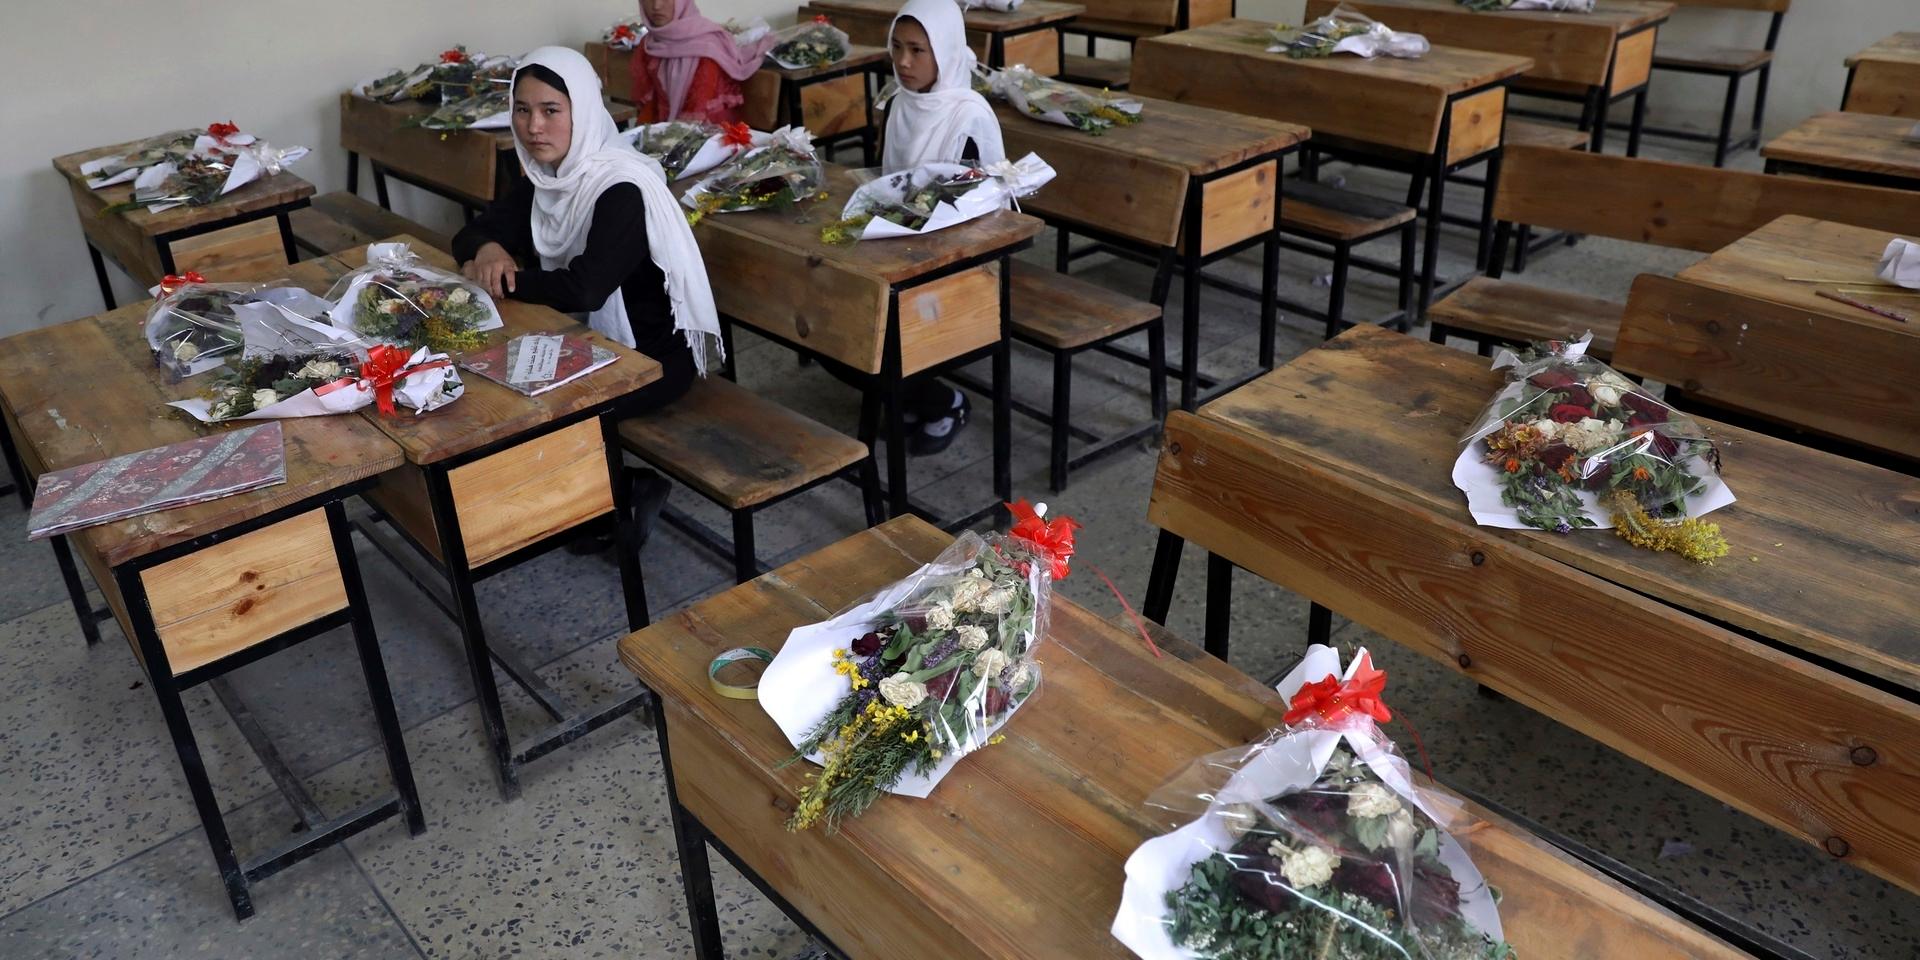 Skolflickor i Kabul. Klasskamrater som dött i flyganfall hedras med buketter. Flickornas framtid beror på talibanernas riktning, enligt experter. Arkivbild.